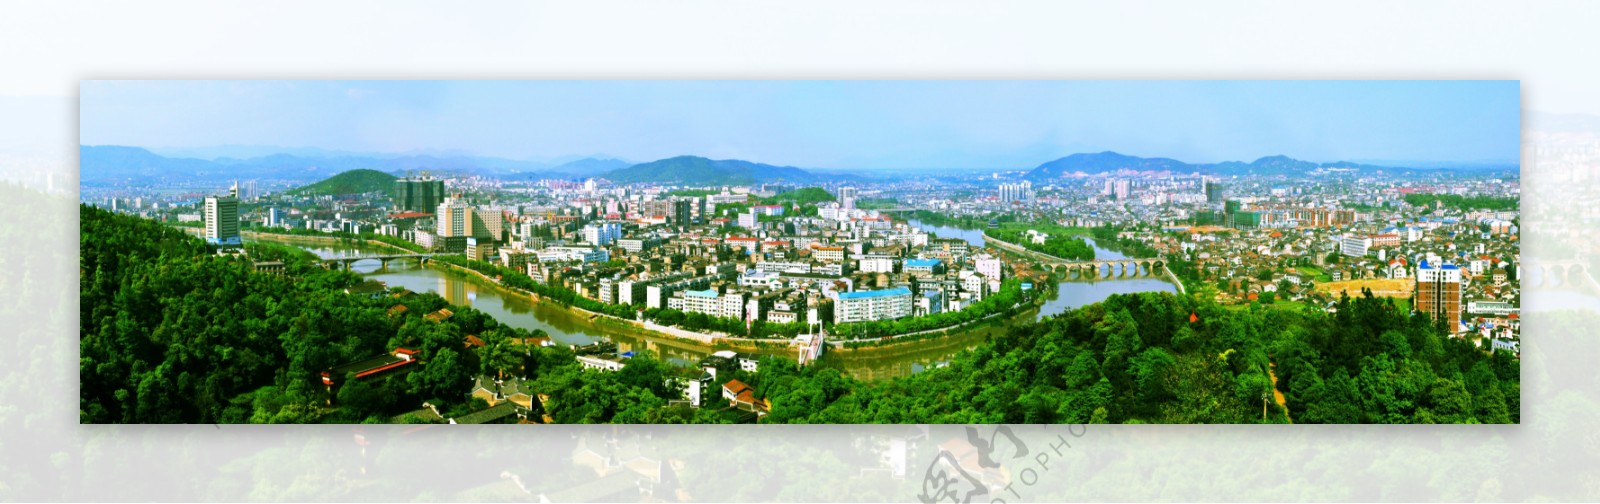 醴陵全景图图片